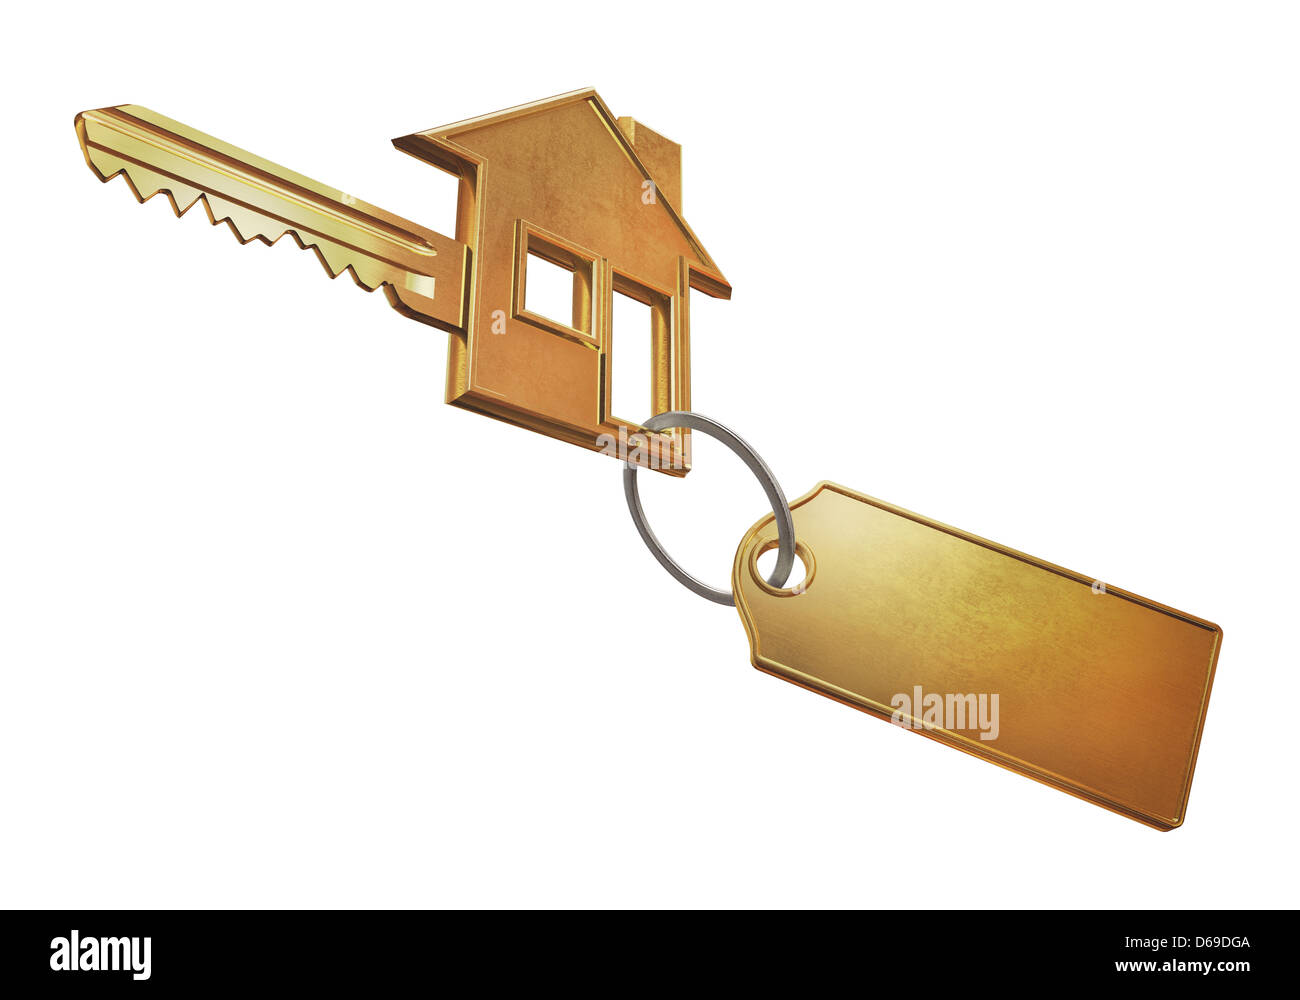 Clé d'or en forme d'une maison et d'un trousseau pour le logo de marque. Banque D'Images